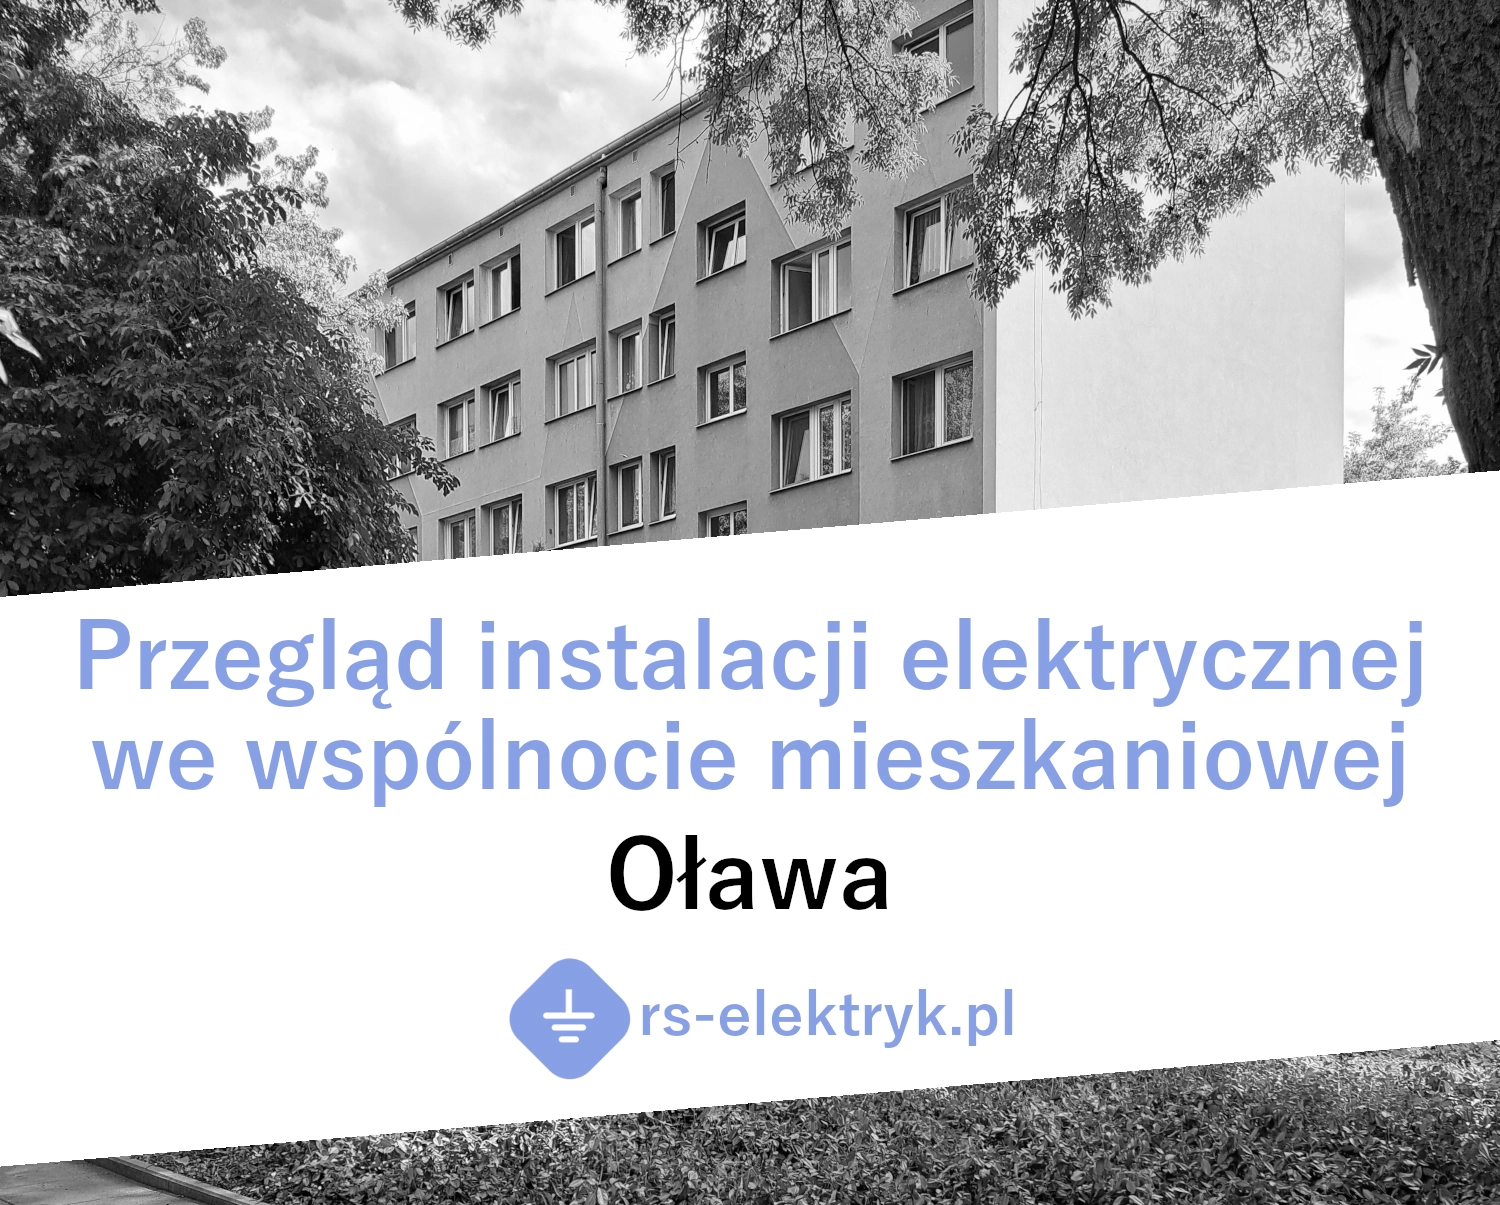 Przegląd instalacji elektrycznej we wspólnocie mieszkaniowej (Oława)